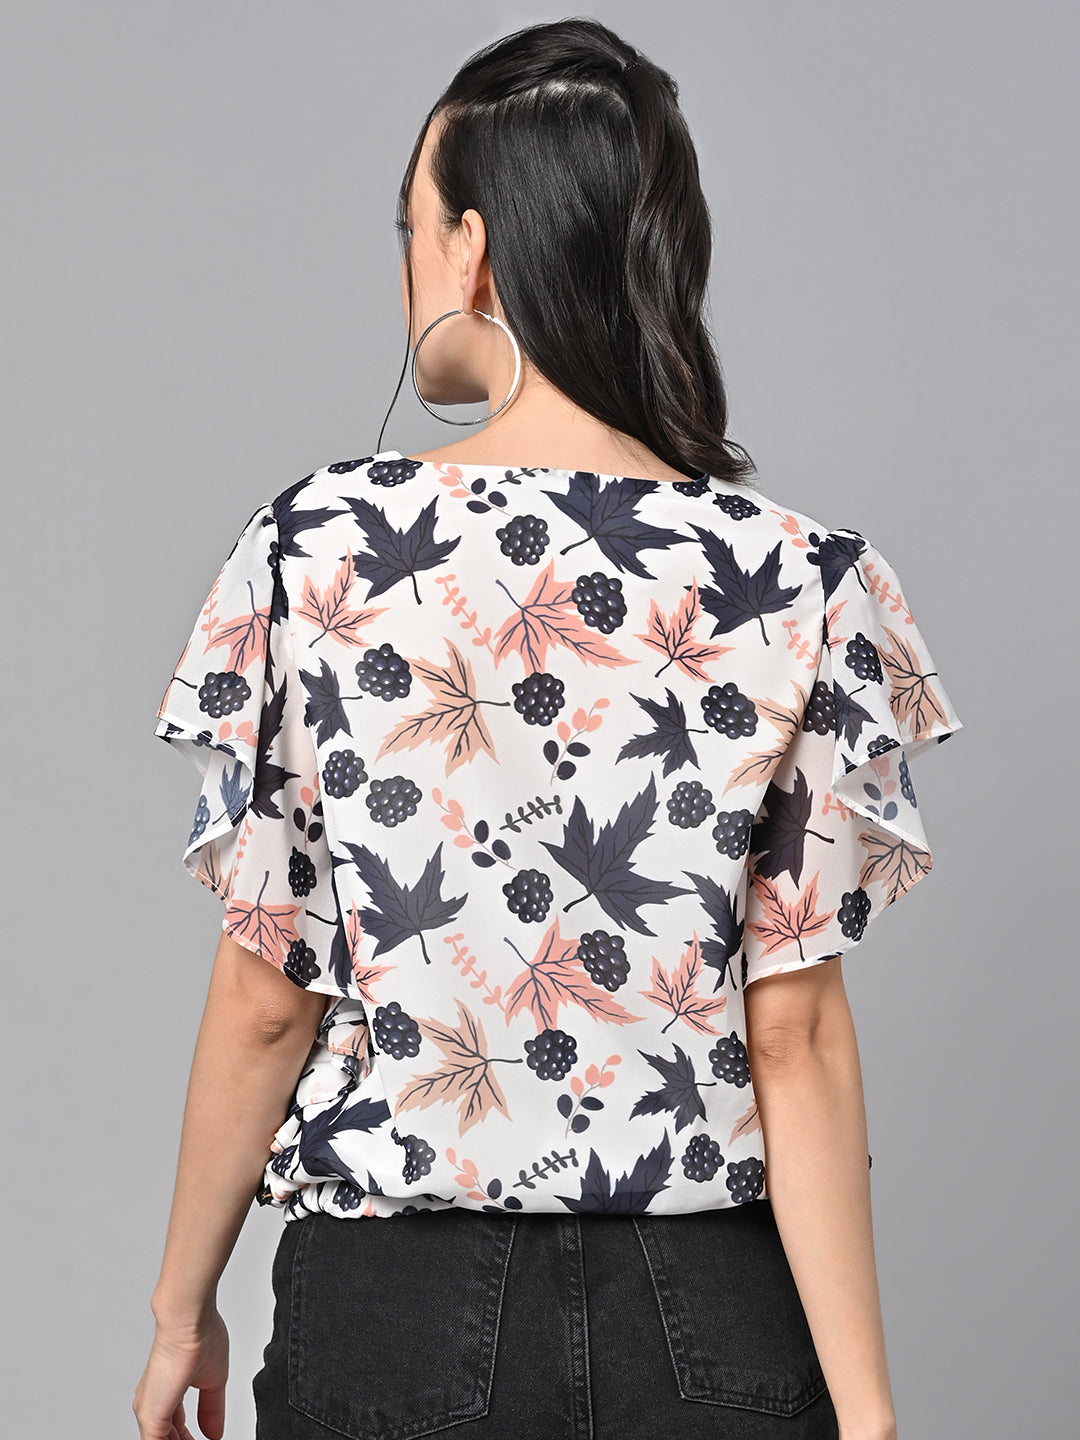 Valbone Women’s Digital Printed Georgette Top With Short-Sleeves